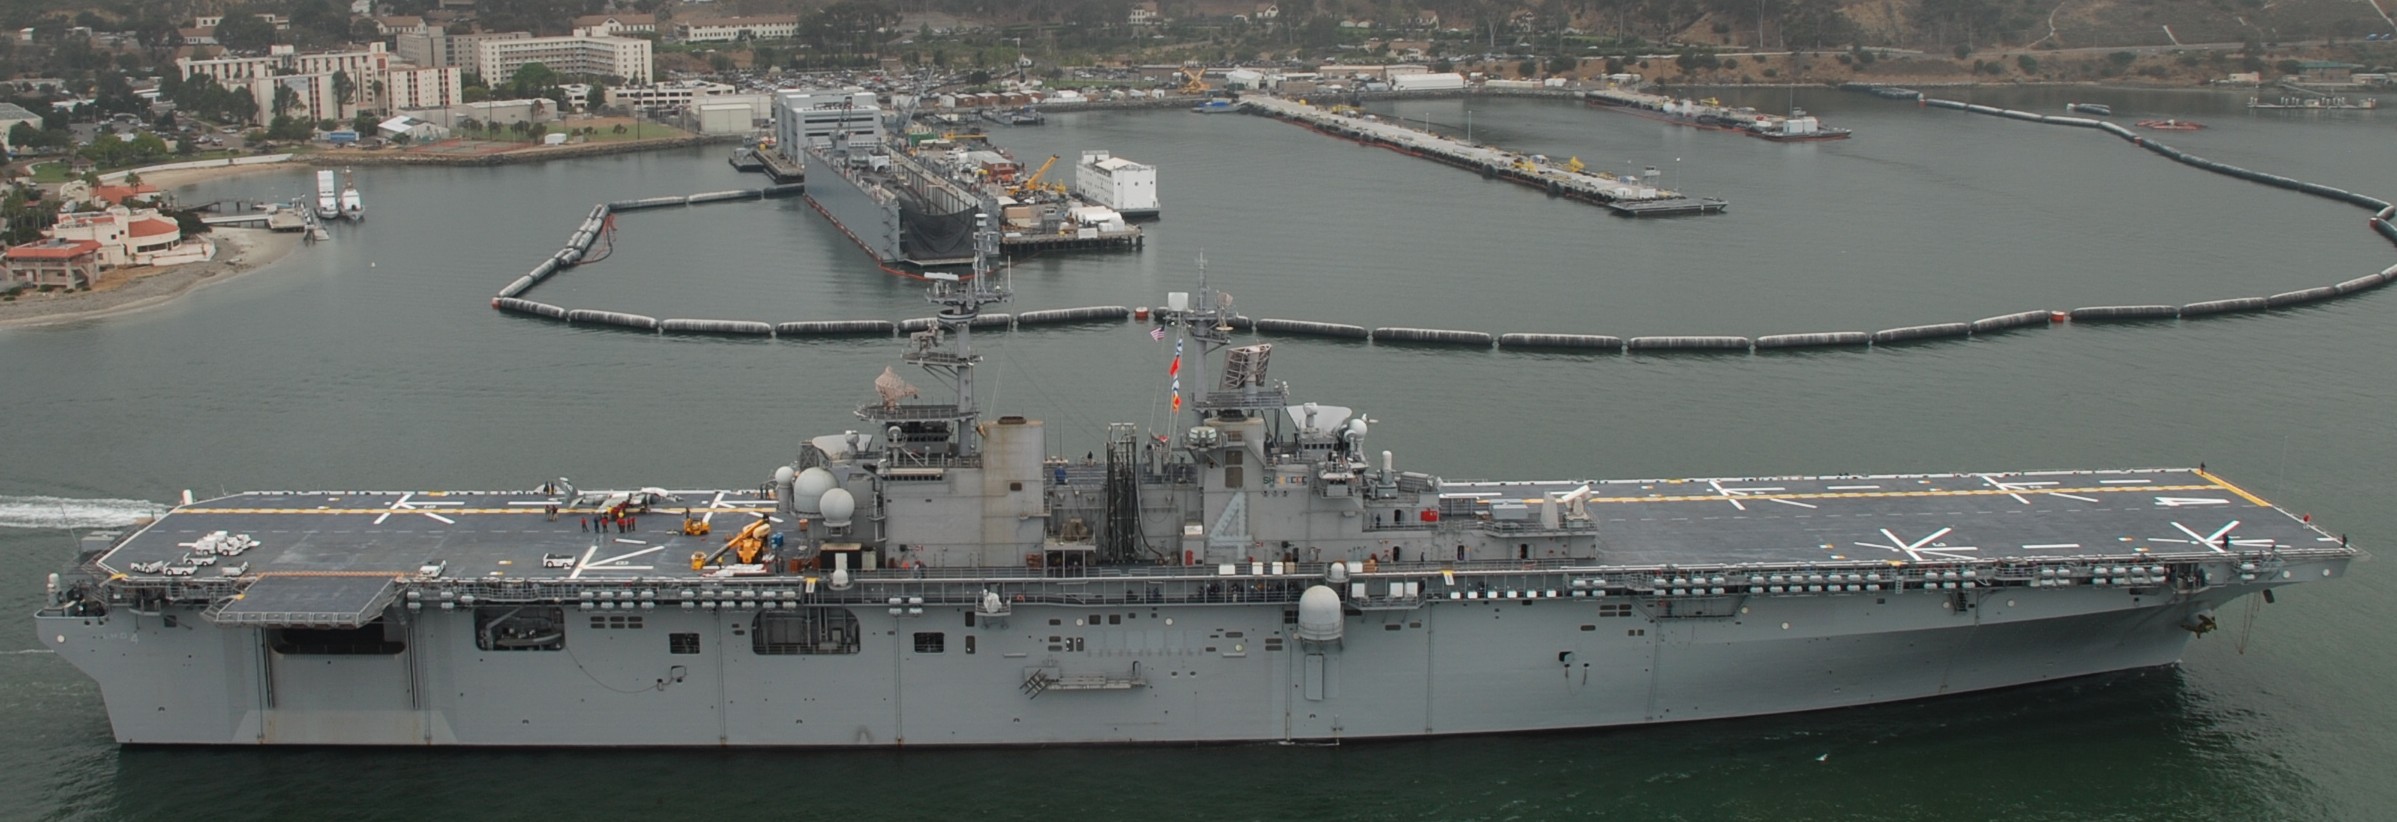 lhd-4 uss boxer wasp class amphibious assault ship dock landing us navy san diego california 42